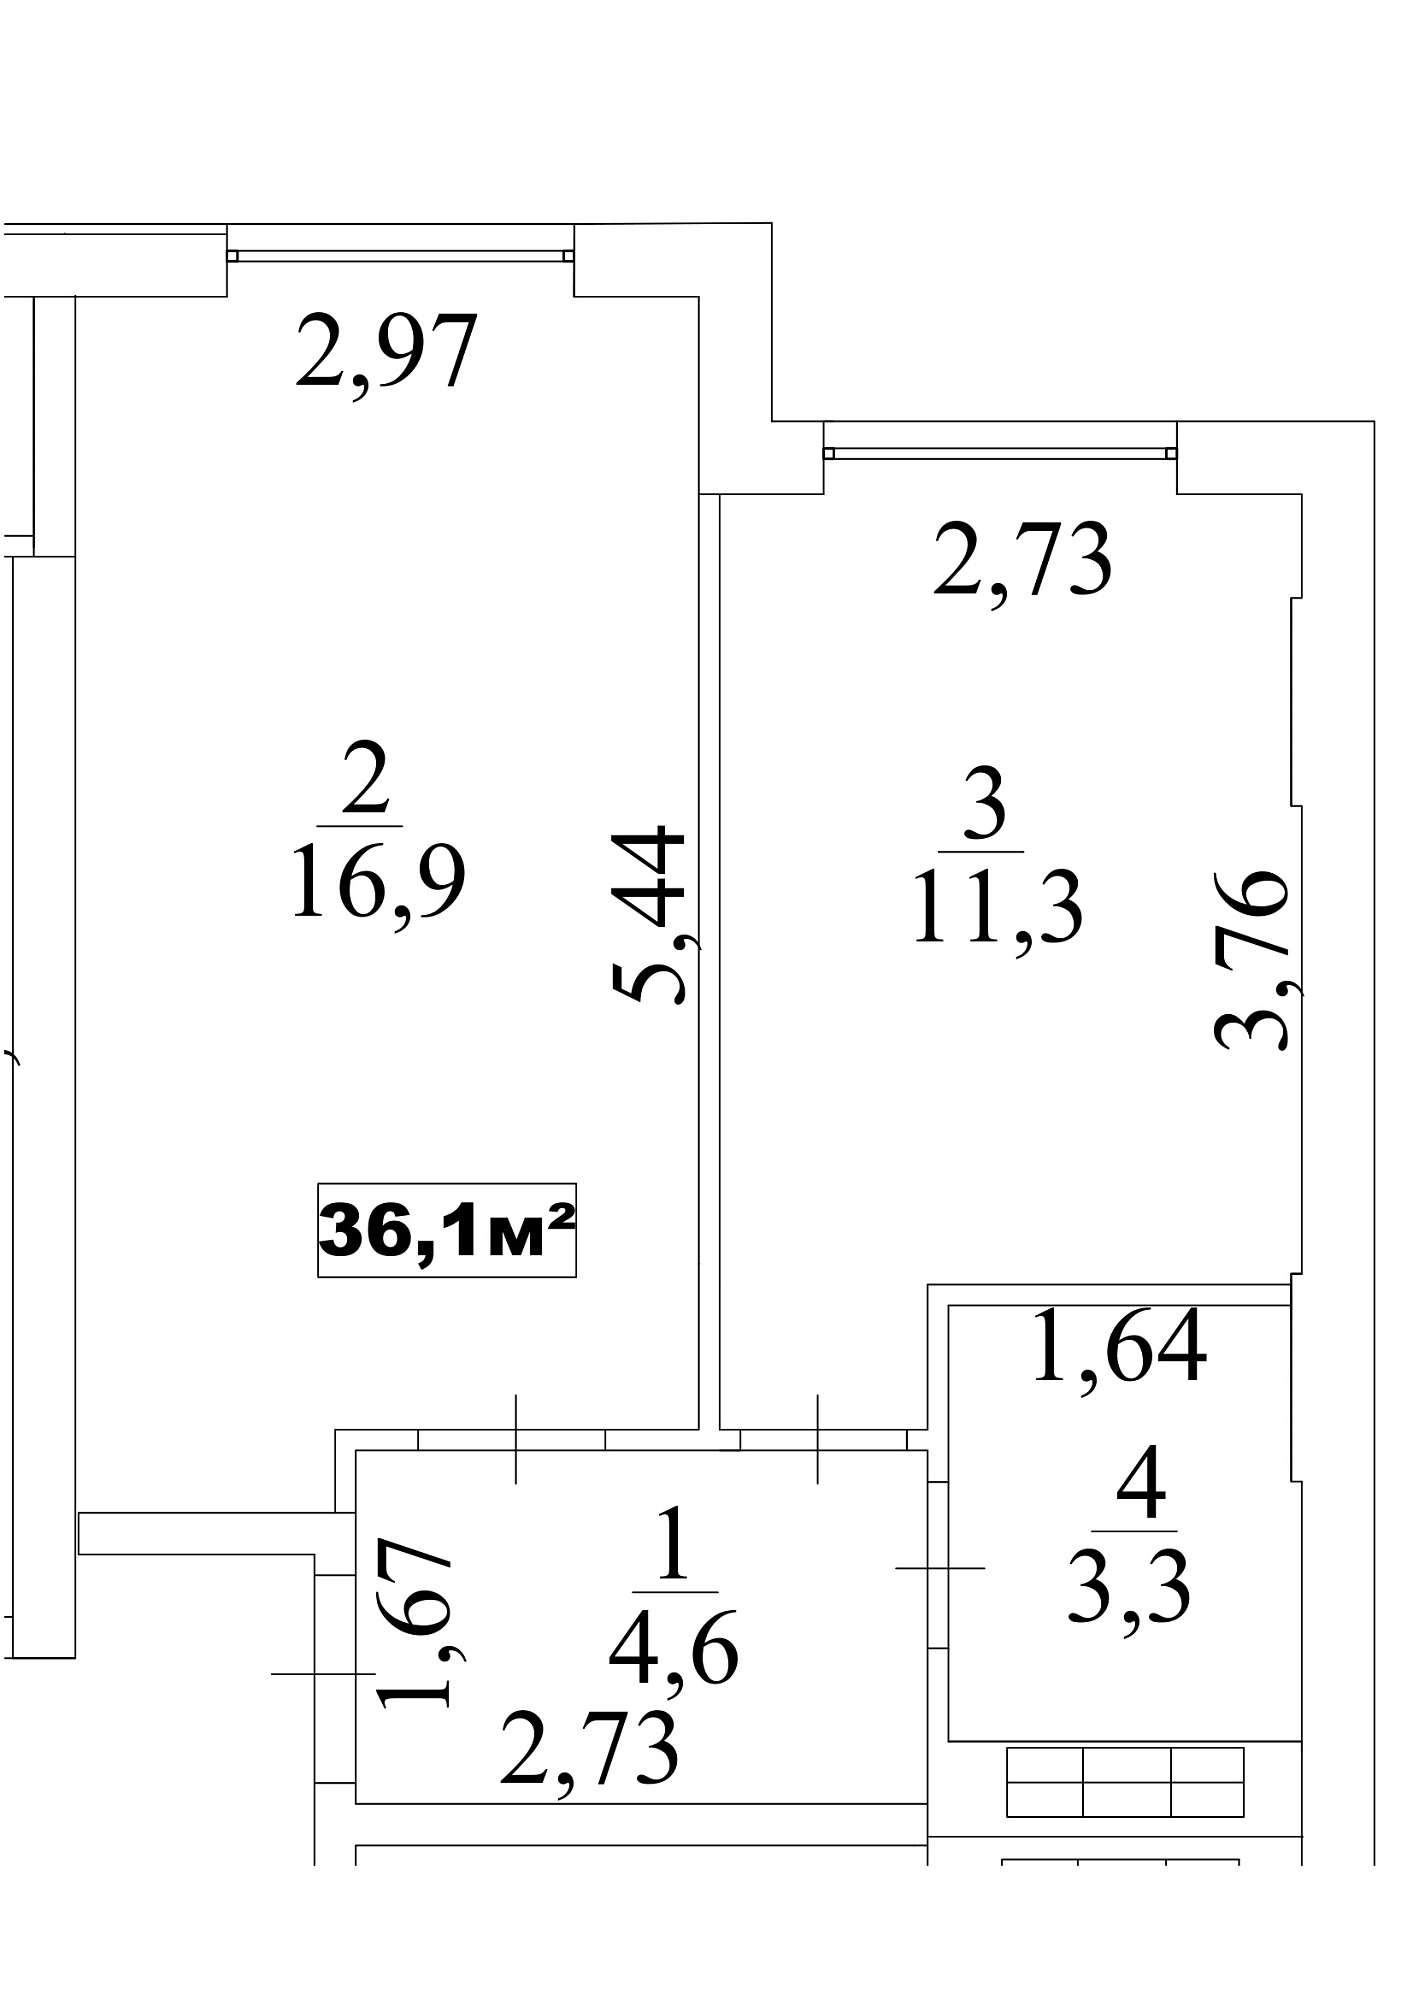 Планировка 1-к квартира площей 36.1м2, AB-10-03/0025б.